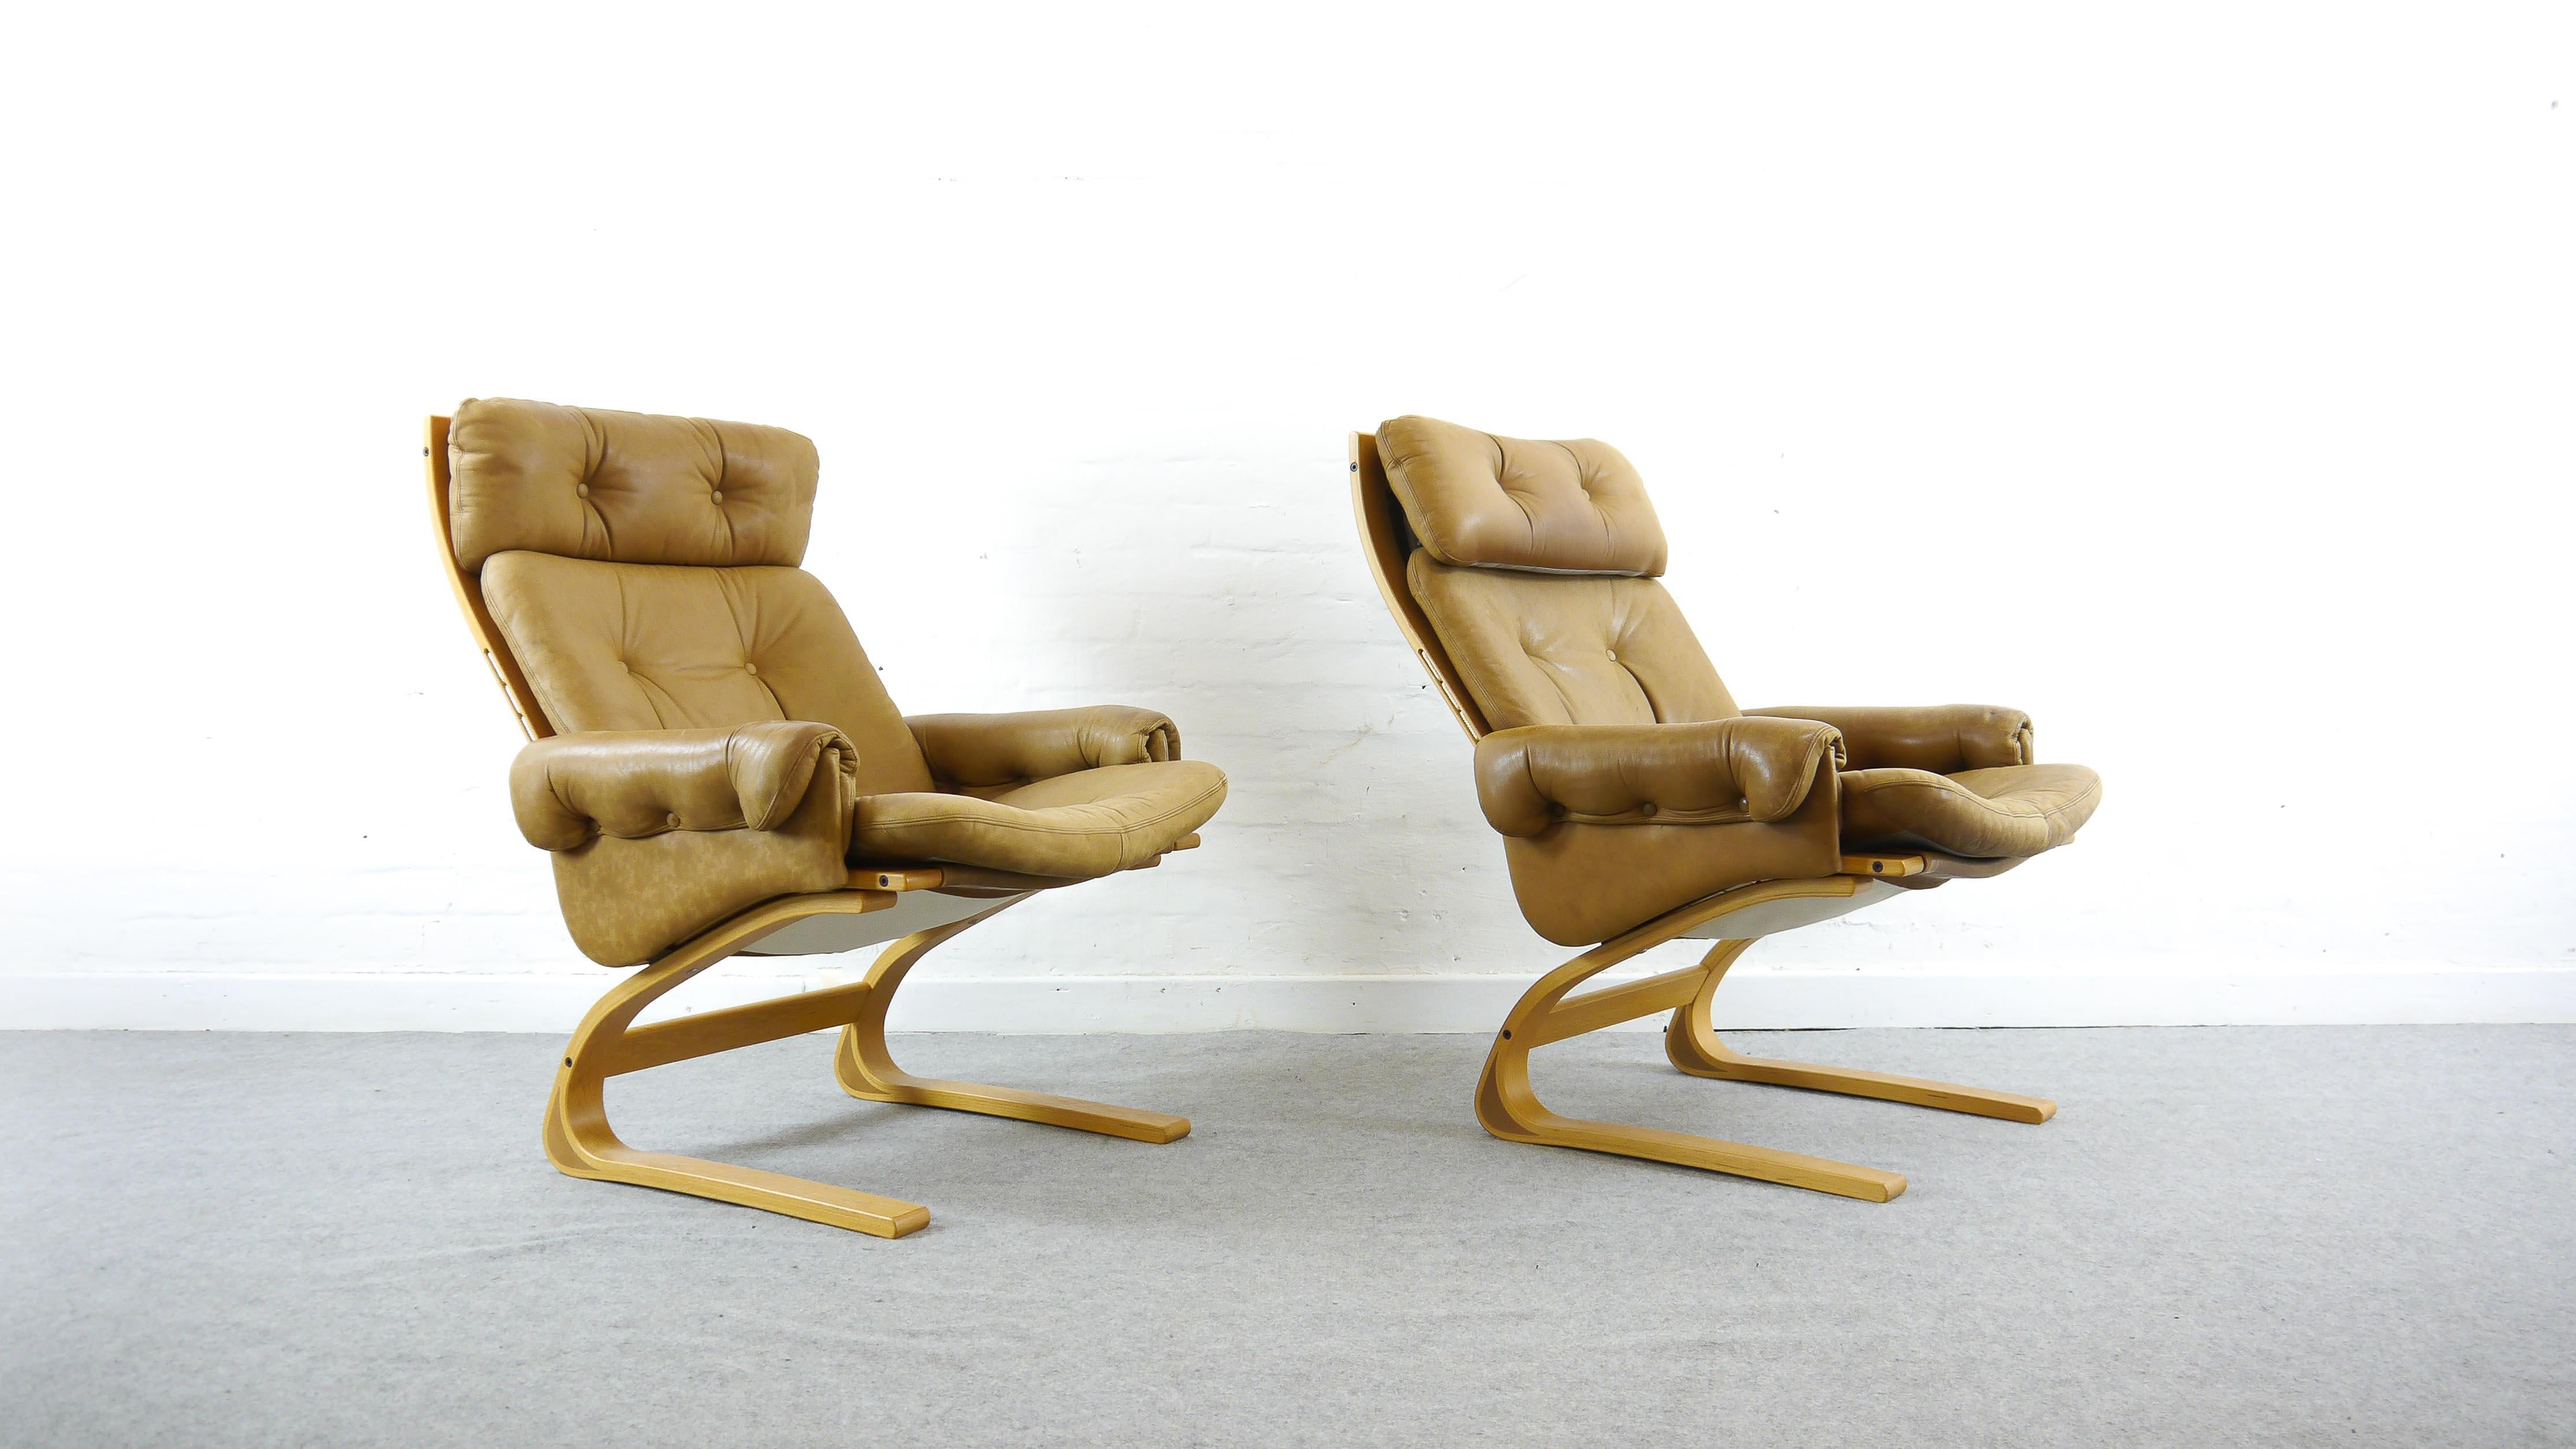 Paar (2) Kengu Lounge Chairs mit hoher Rückenlehne von Elsa und Nordahl Solheim. Hergestellt von Rybo Rykken & Co. in Norwegen, 1970er Jahre. Gepolstert mit original braunem oder karamellfarbenem Leder. Freitragende Konstruktion aus Holz mit